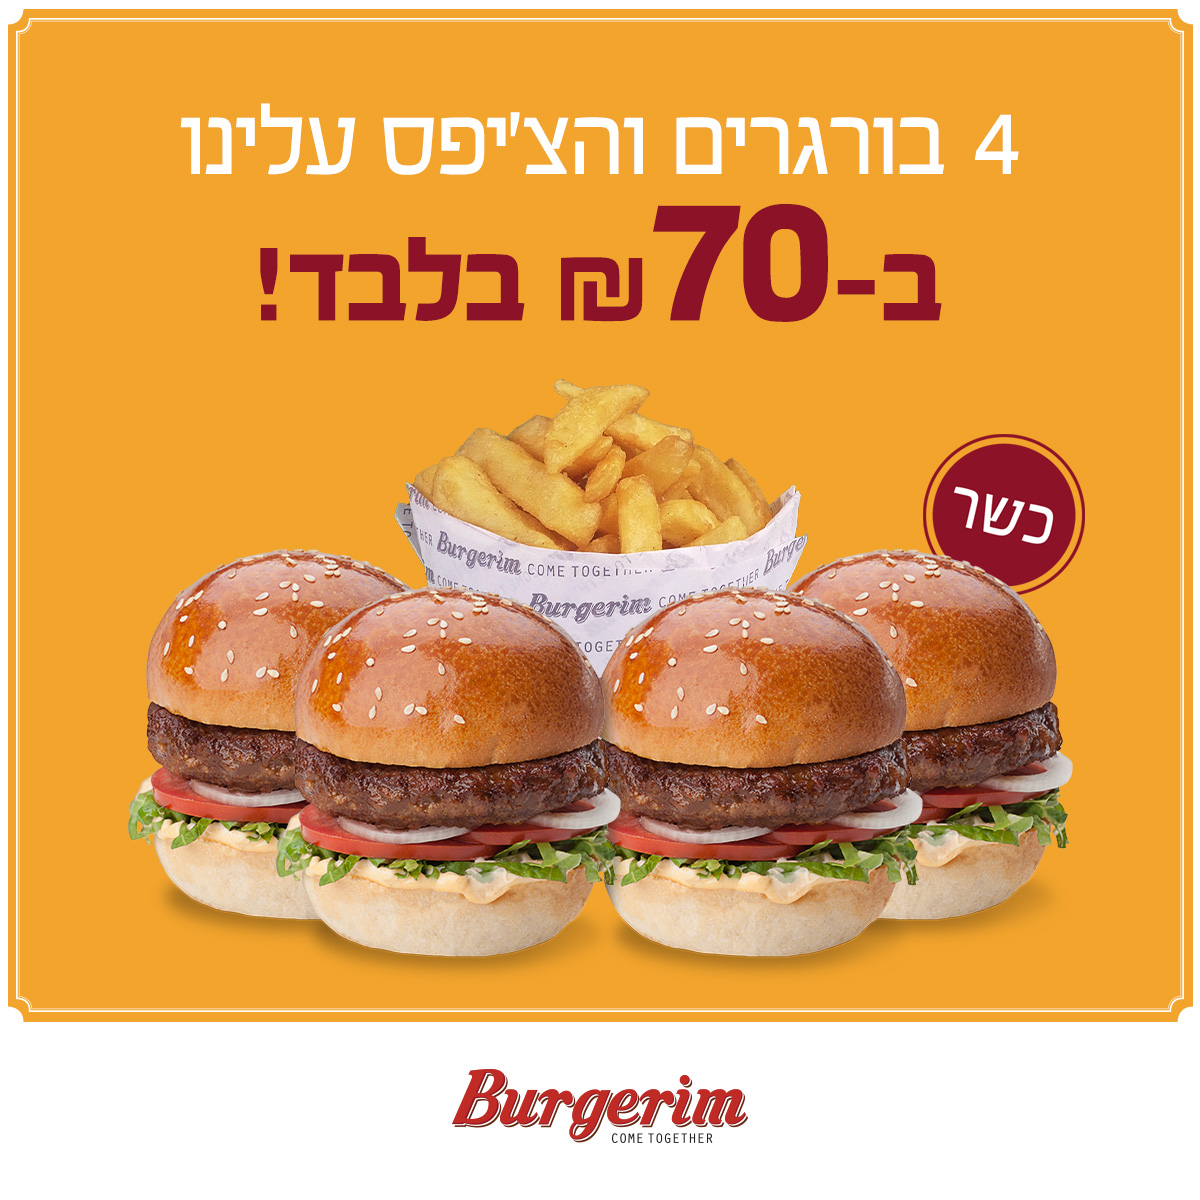 רשת Burgerim במבצע שאסור לפספס… קונים 4 בורגרים והצ'יפס- עלינו!